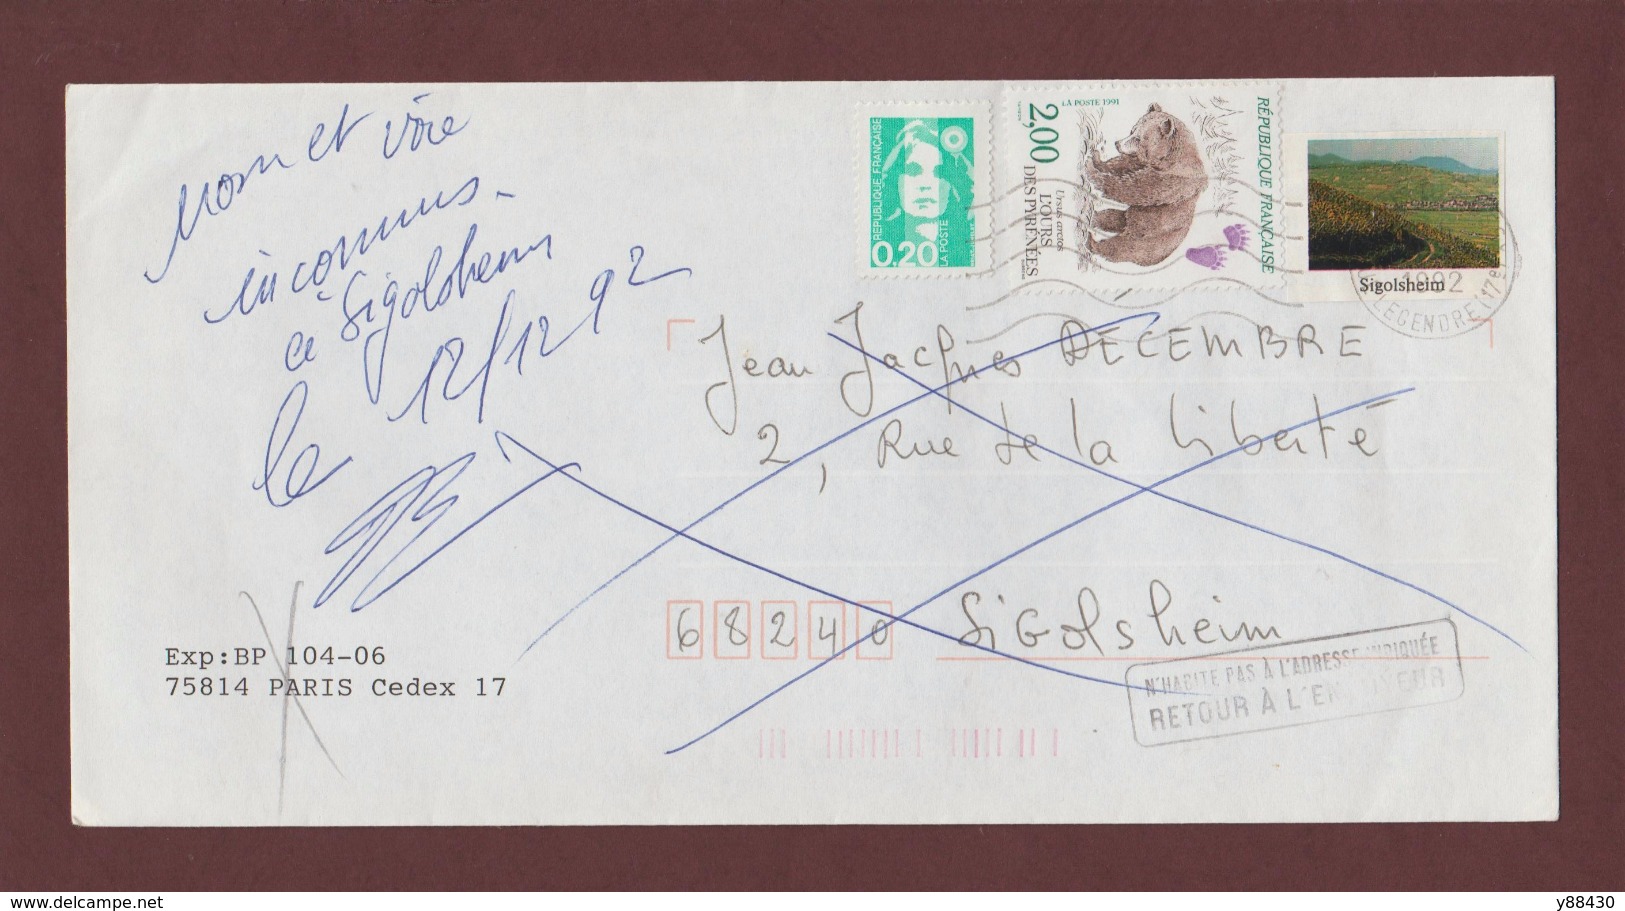 2721 De 1991 - Adresse Fantaisiste - M. DECEMBRE à SIGOLSHEIM. 68 - Retour Cachet De KAYSERSBERG - Voir 2 Scannes - Used Stamps